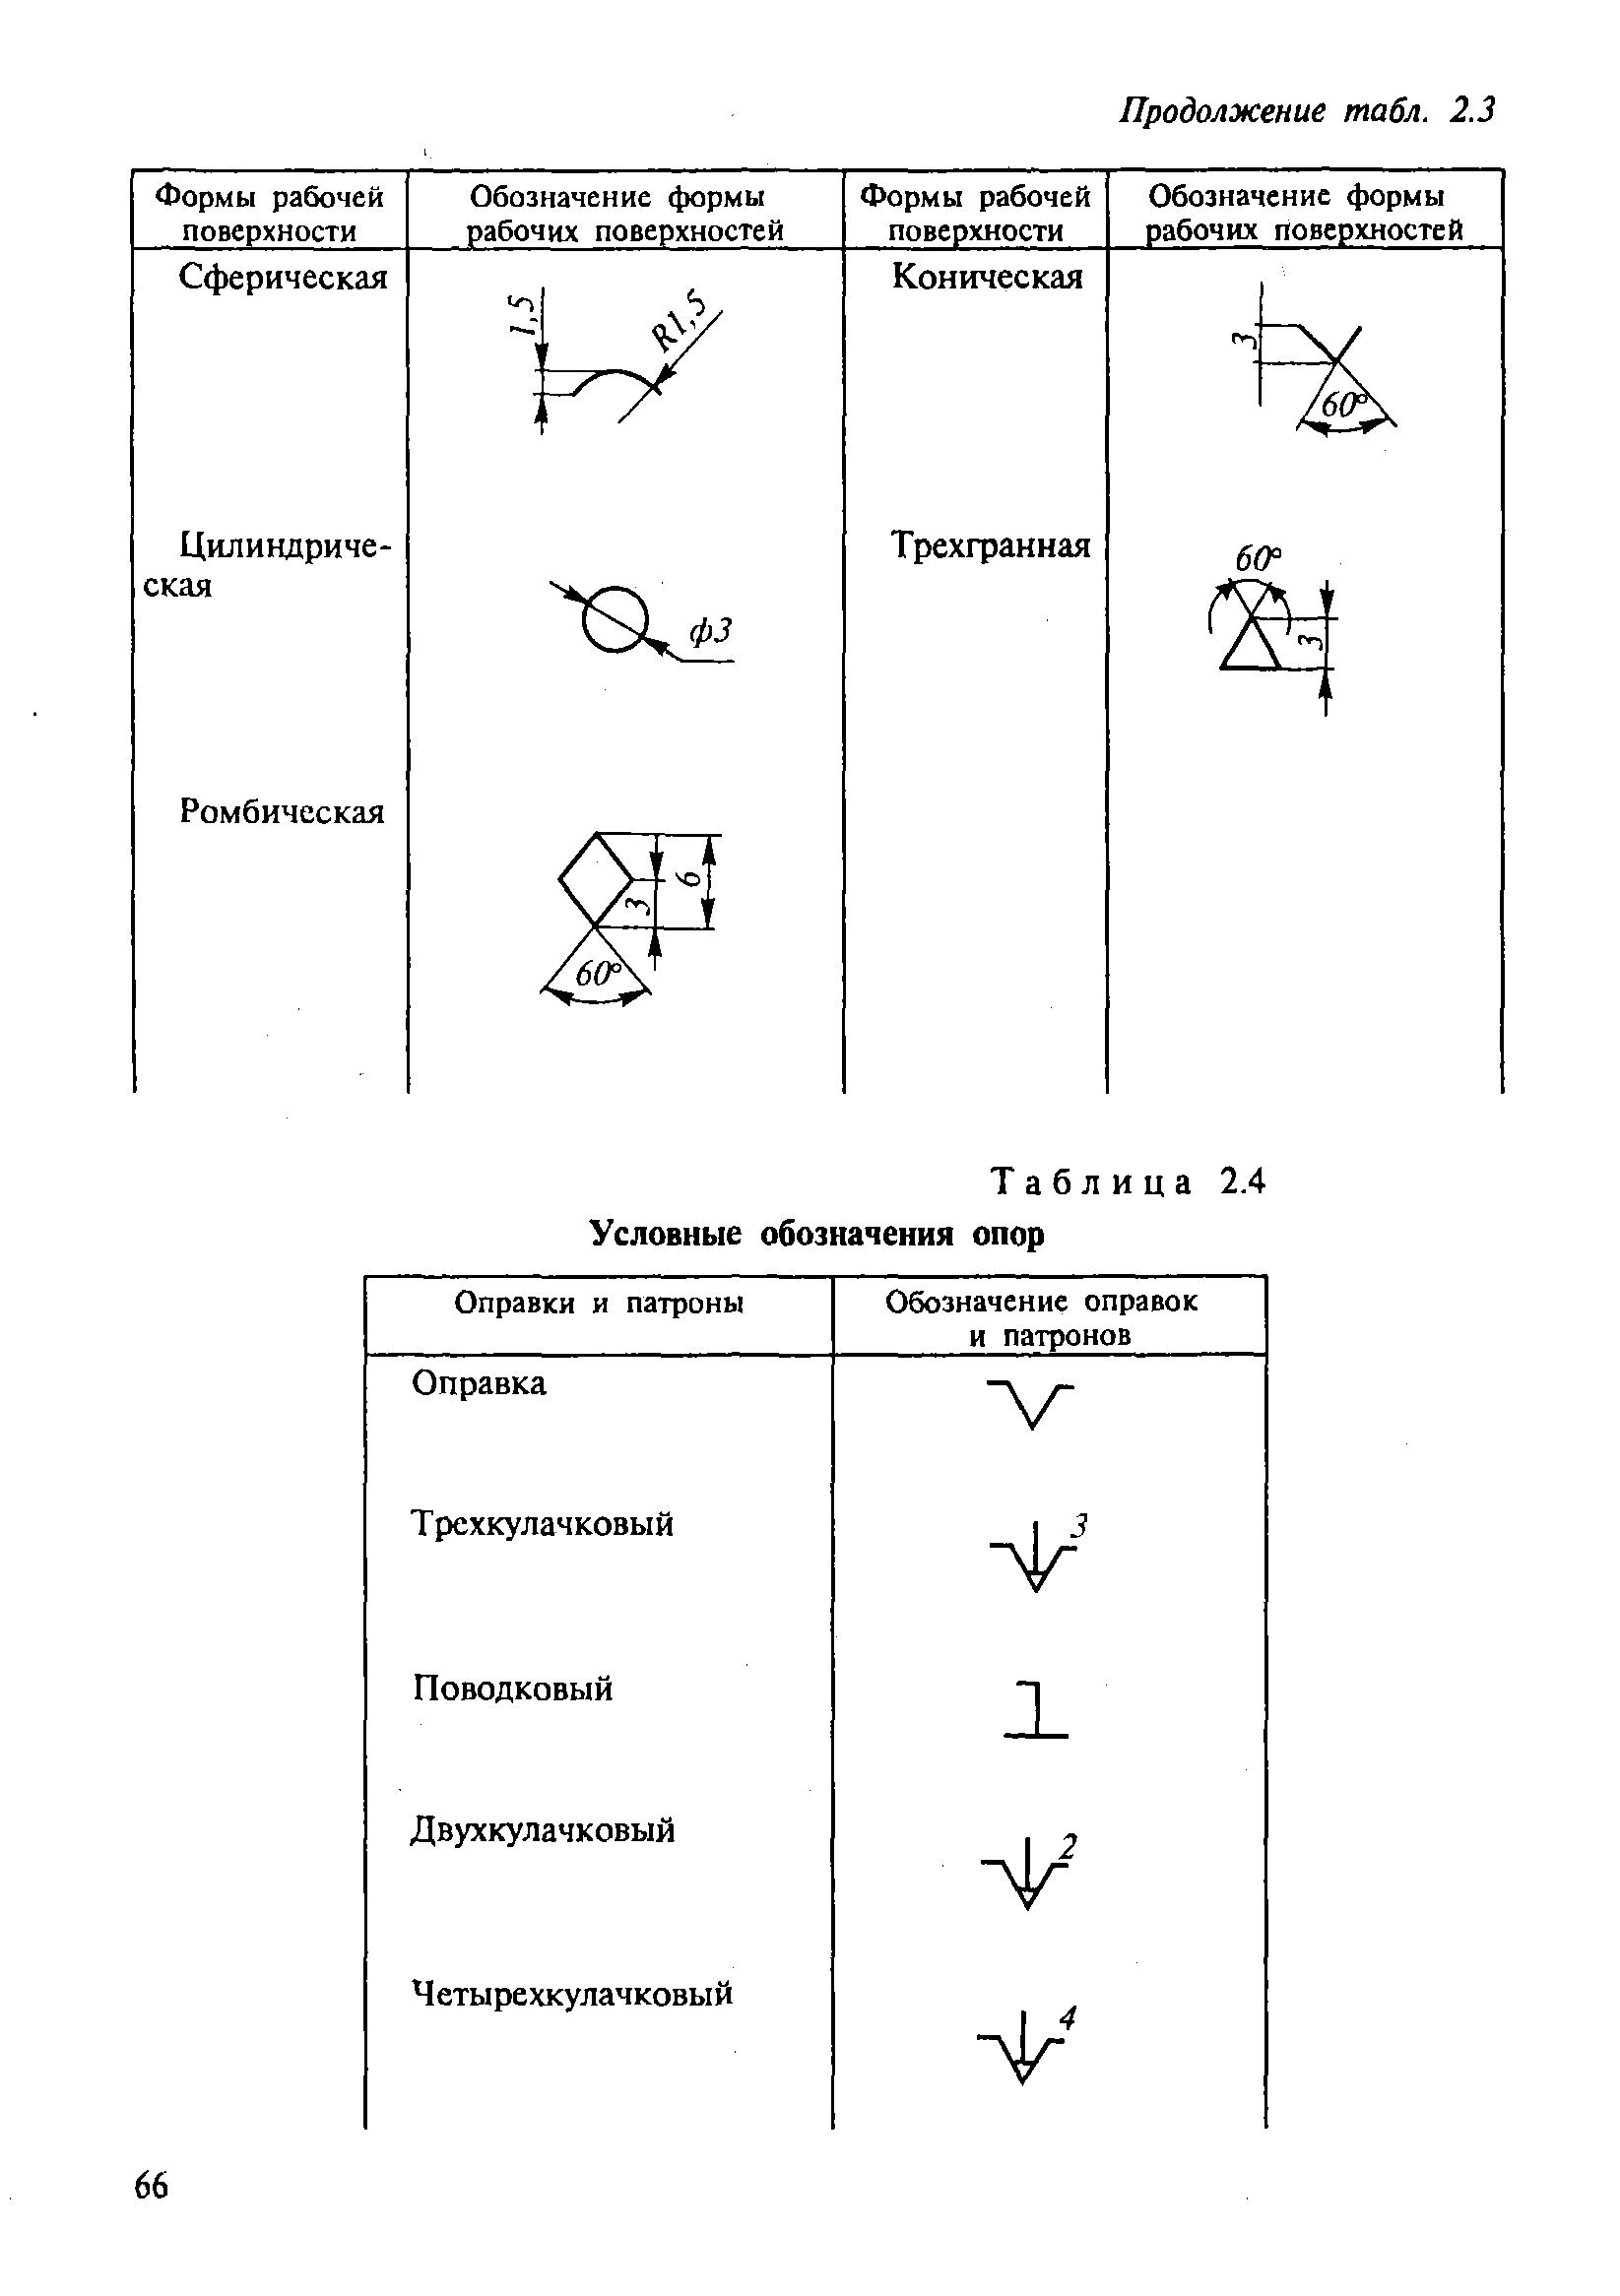 Таблица 2.4 Условные обозначения опор
